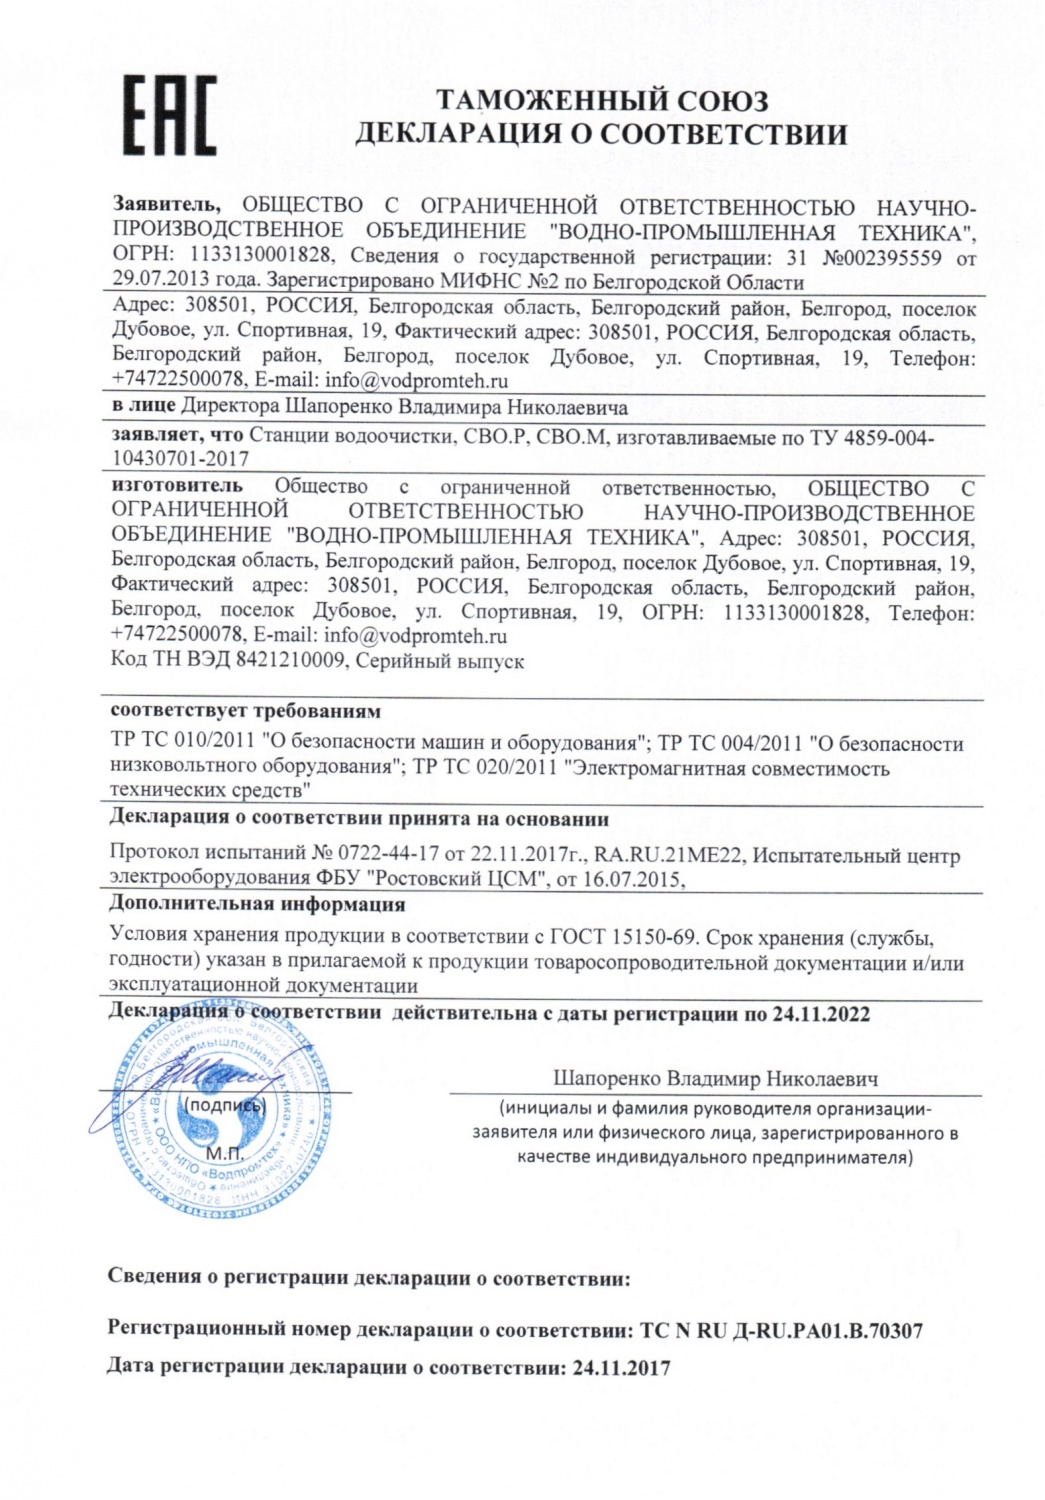 Декларация о соответствии требованиям ТР ТС на продукцию «Станции водоочистки»